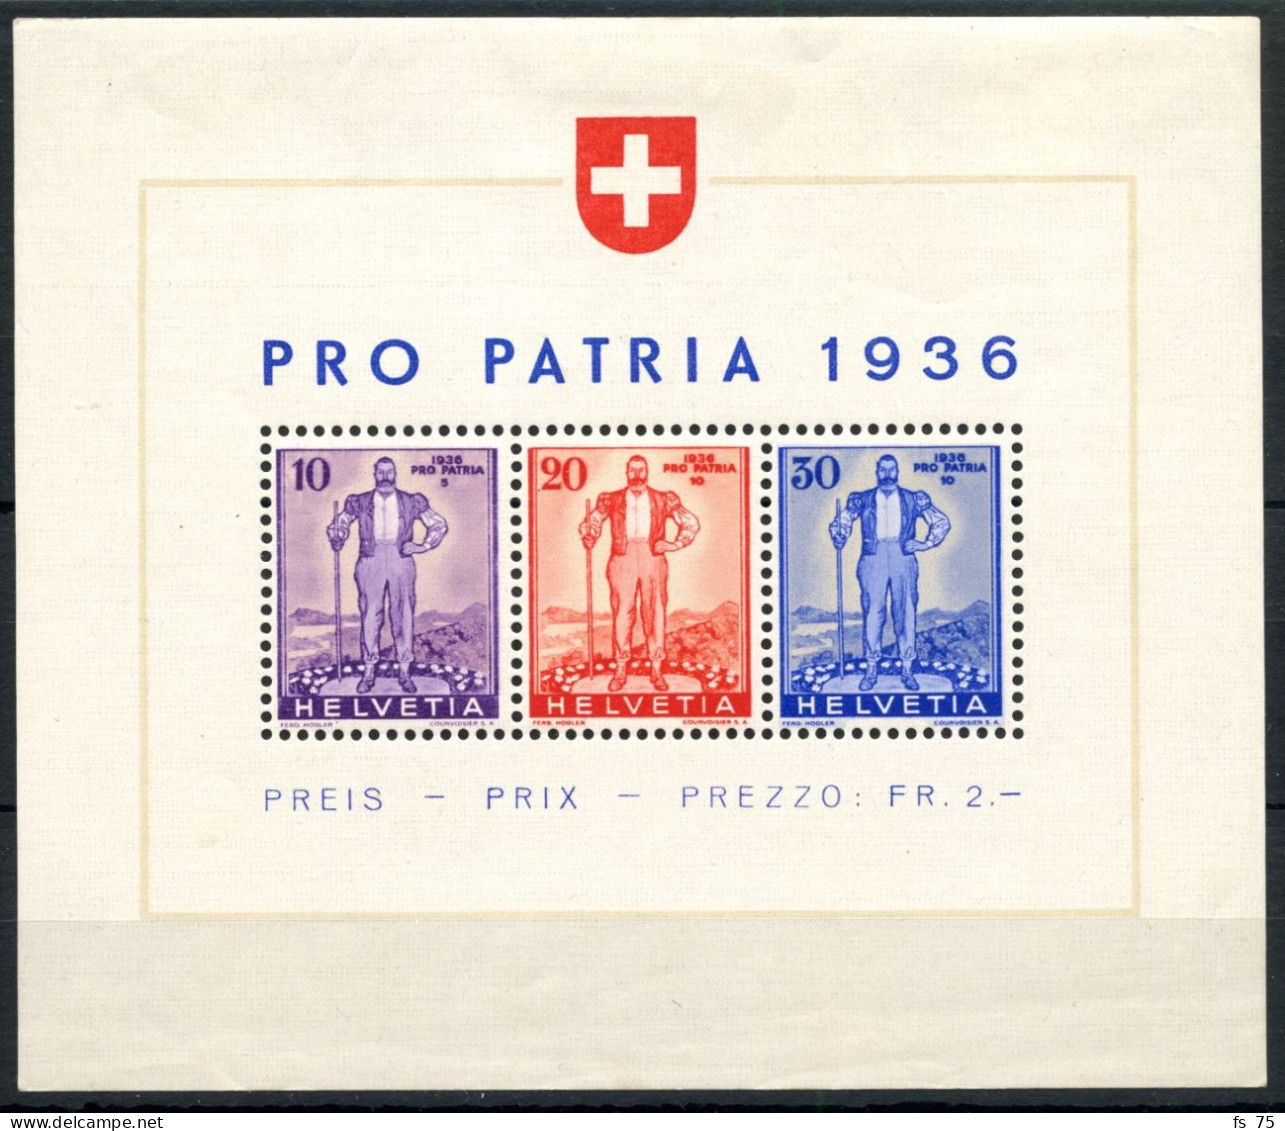 SUISSE - BLOC W 8 - PRO PATRIA 1936 - AVEC CHARNIERE - Blocs & Feuillets